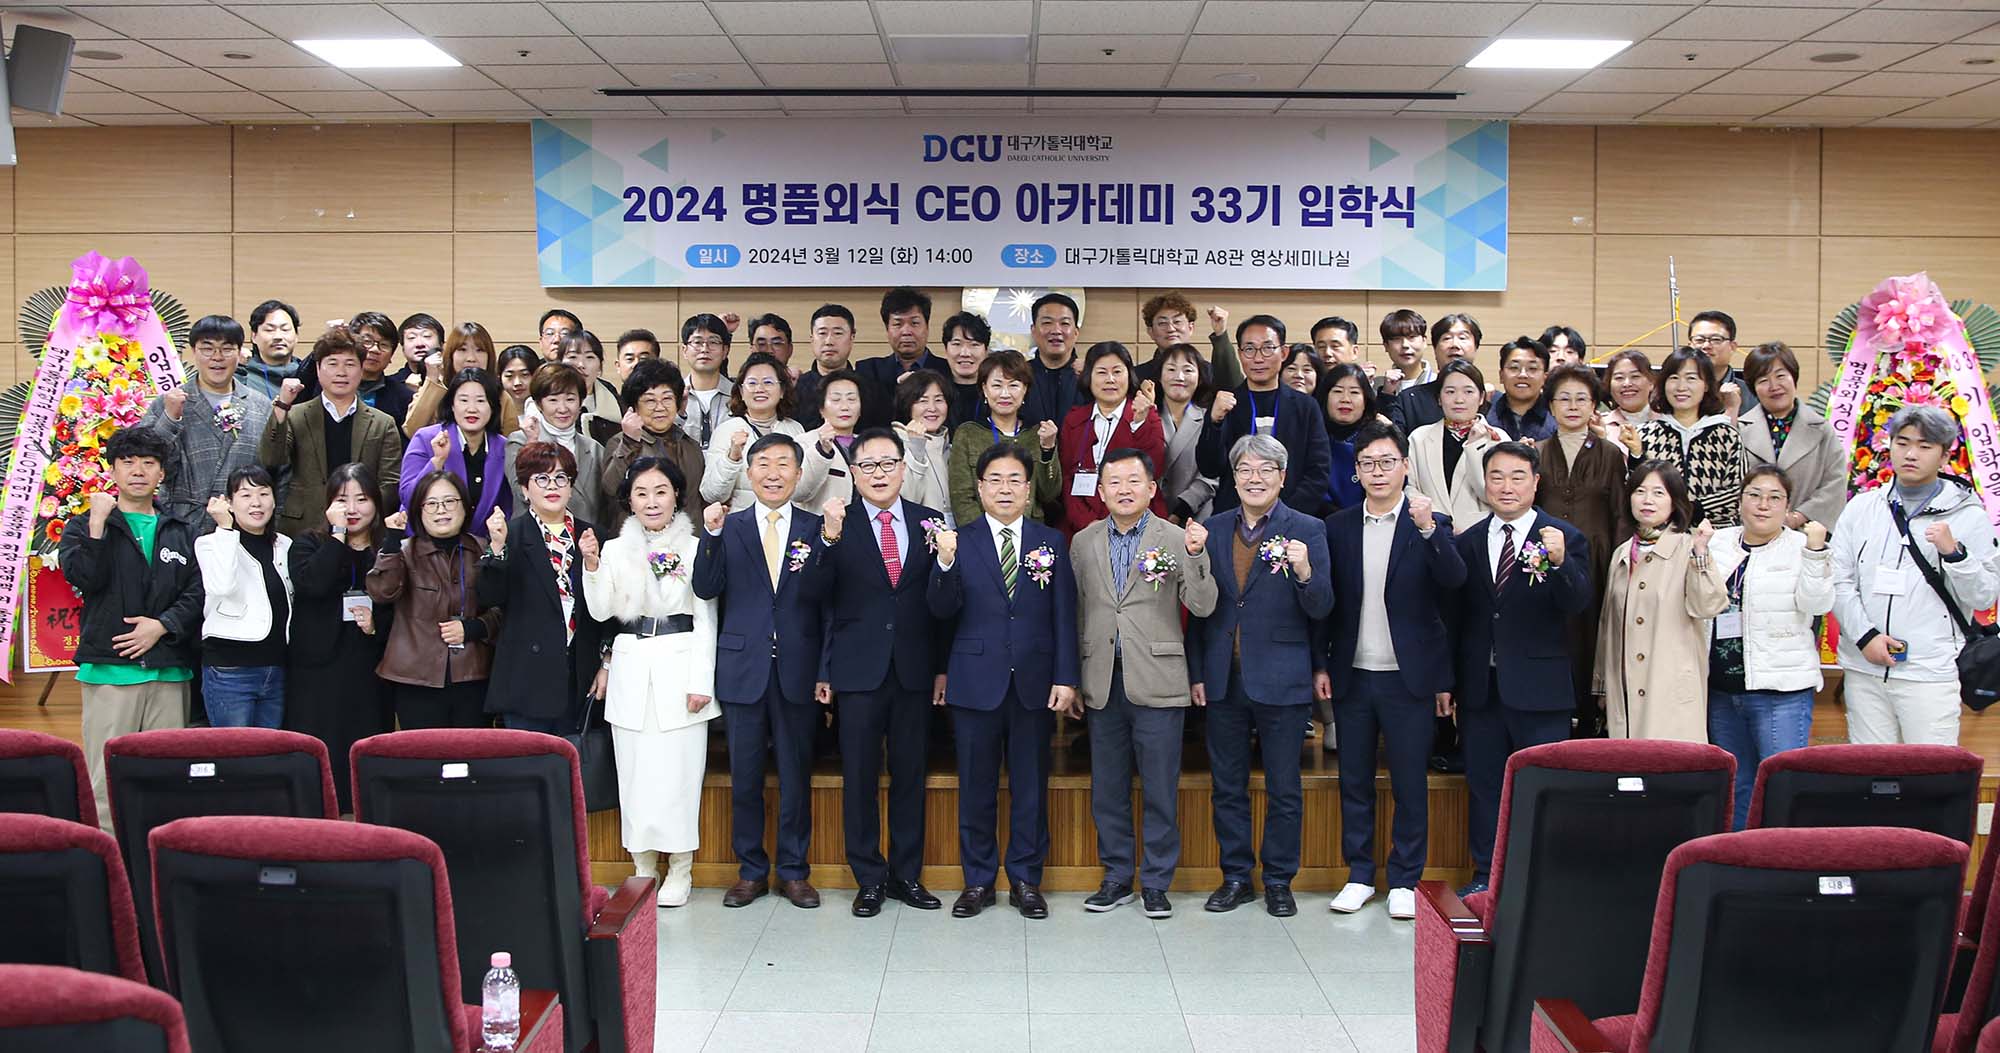 ‘2024 명품외식 CEO 아카데미’ 입학식 개최